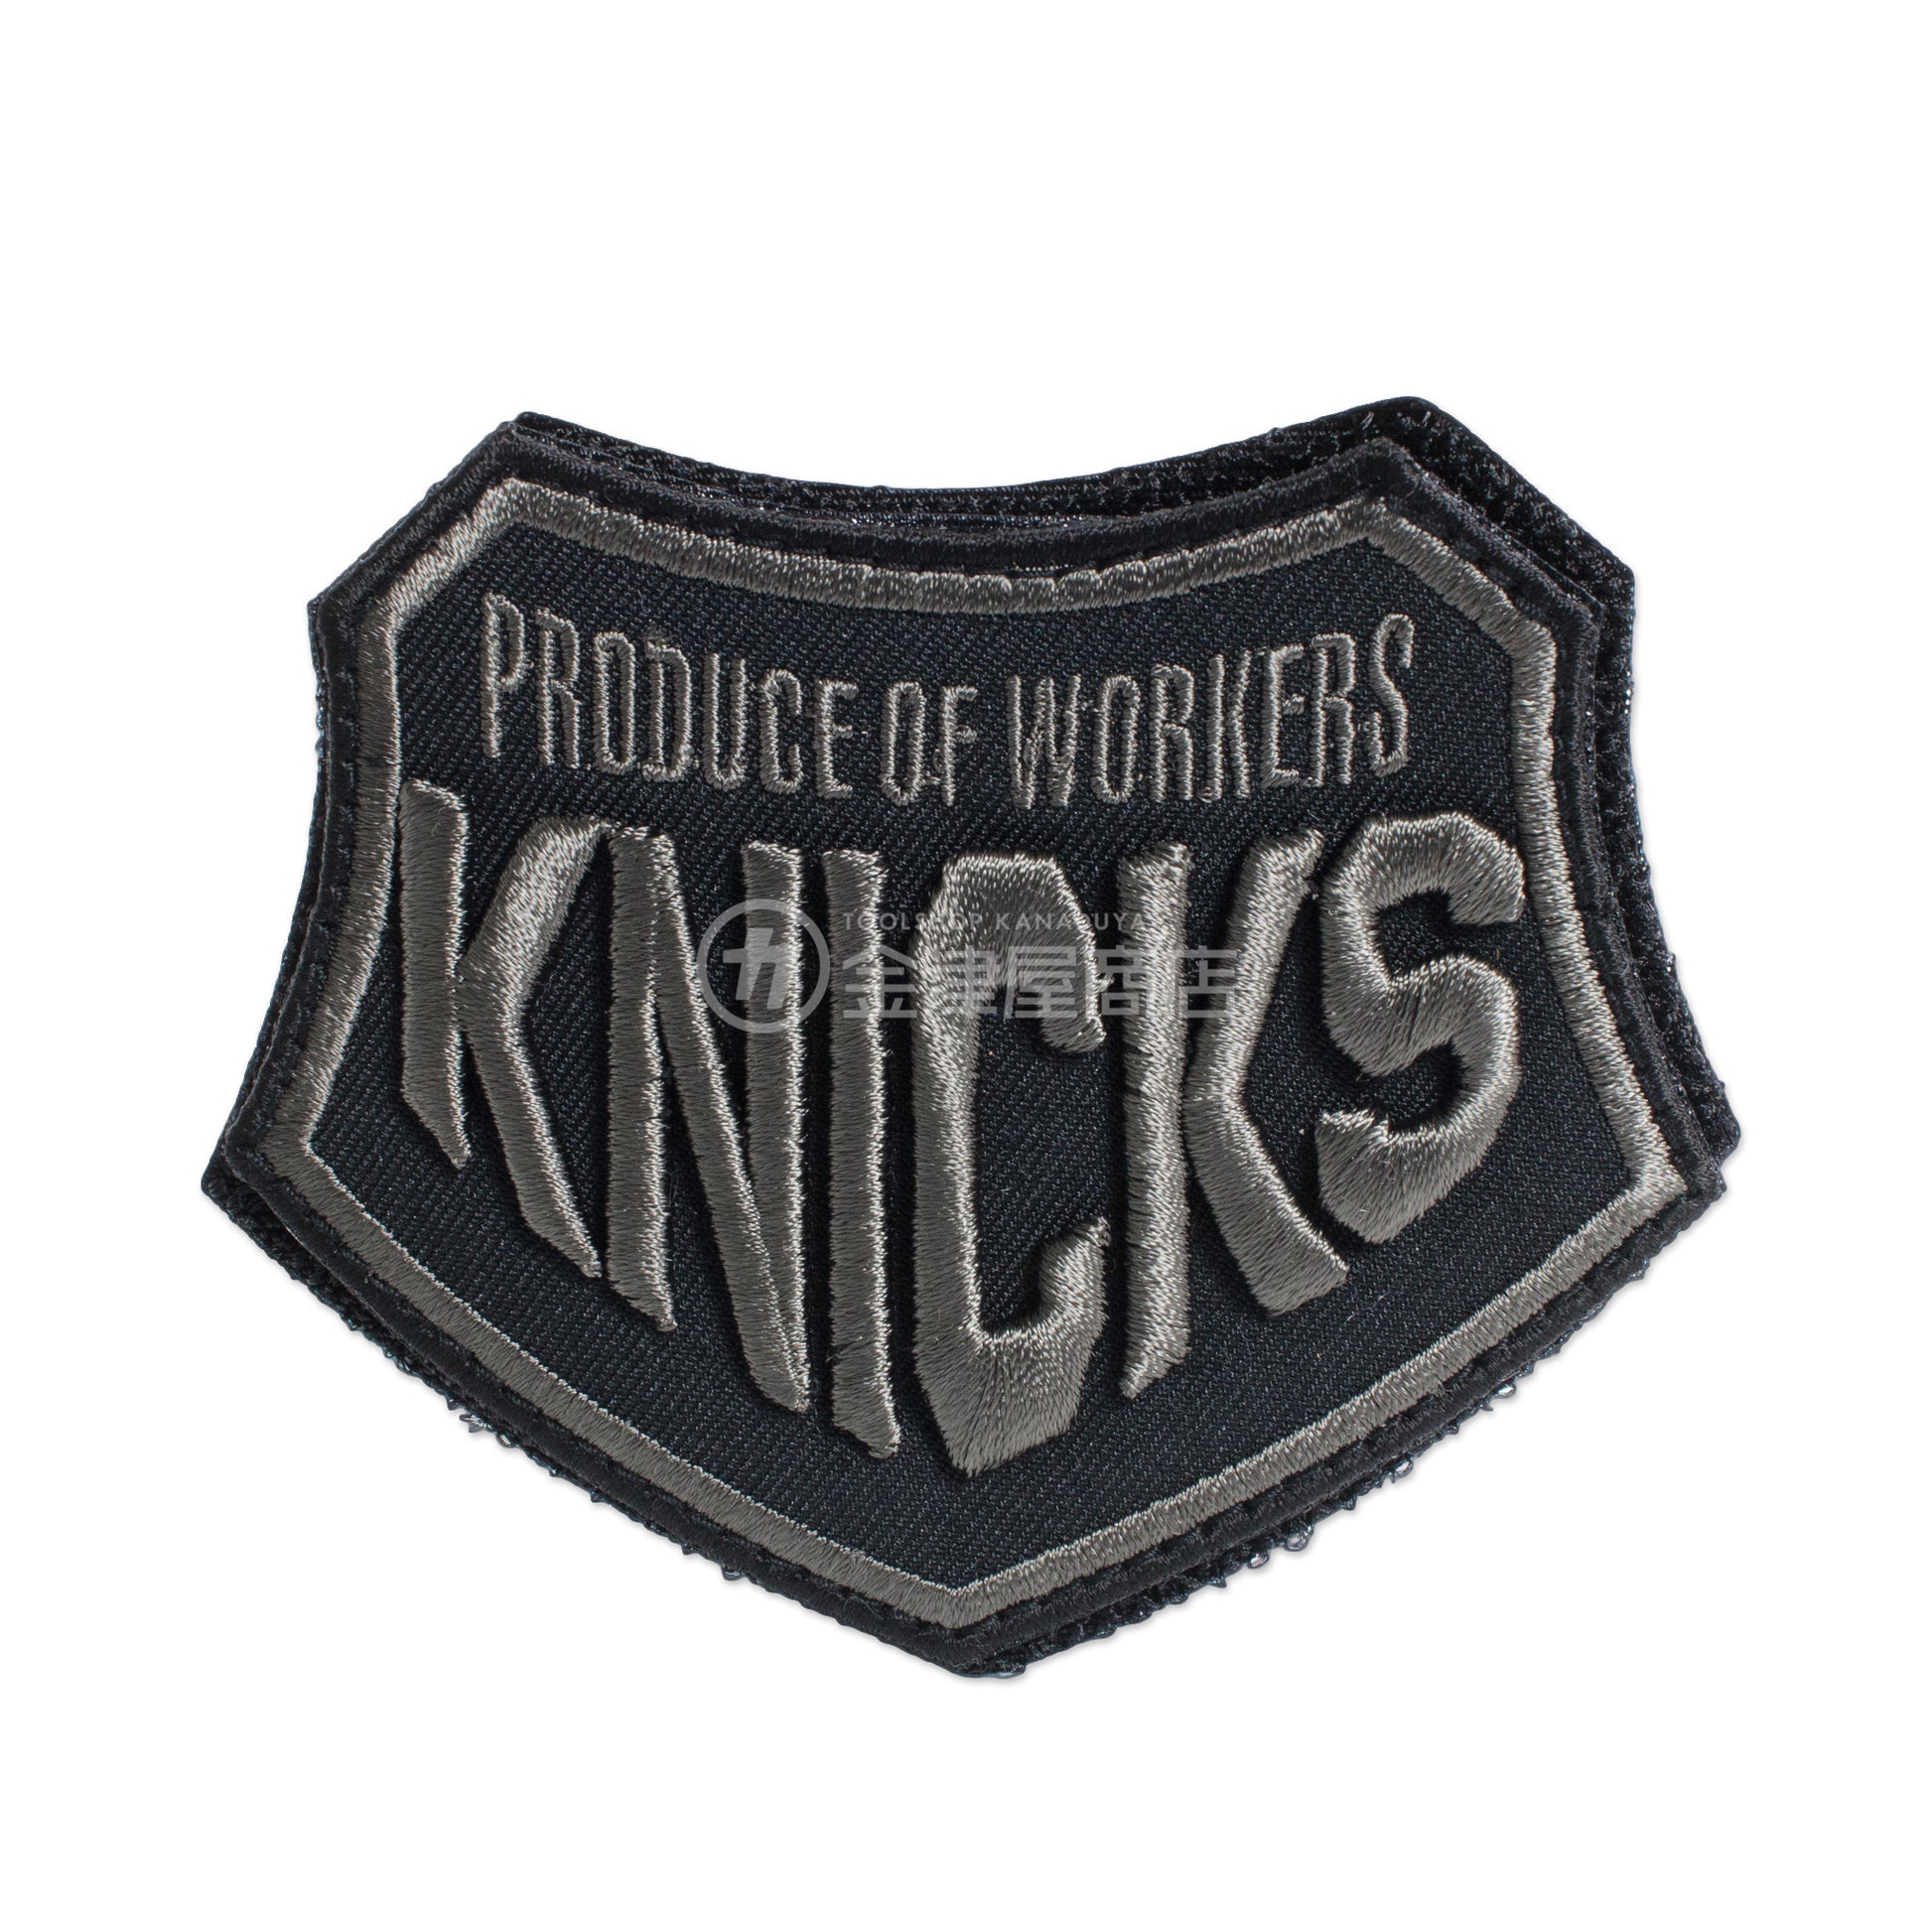 ニックス(KNICKS) PRODUCE OF WORKERS 3D刺繍 ベルクロワッペン W-3D-W-3D